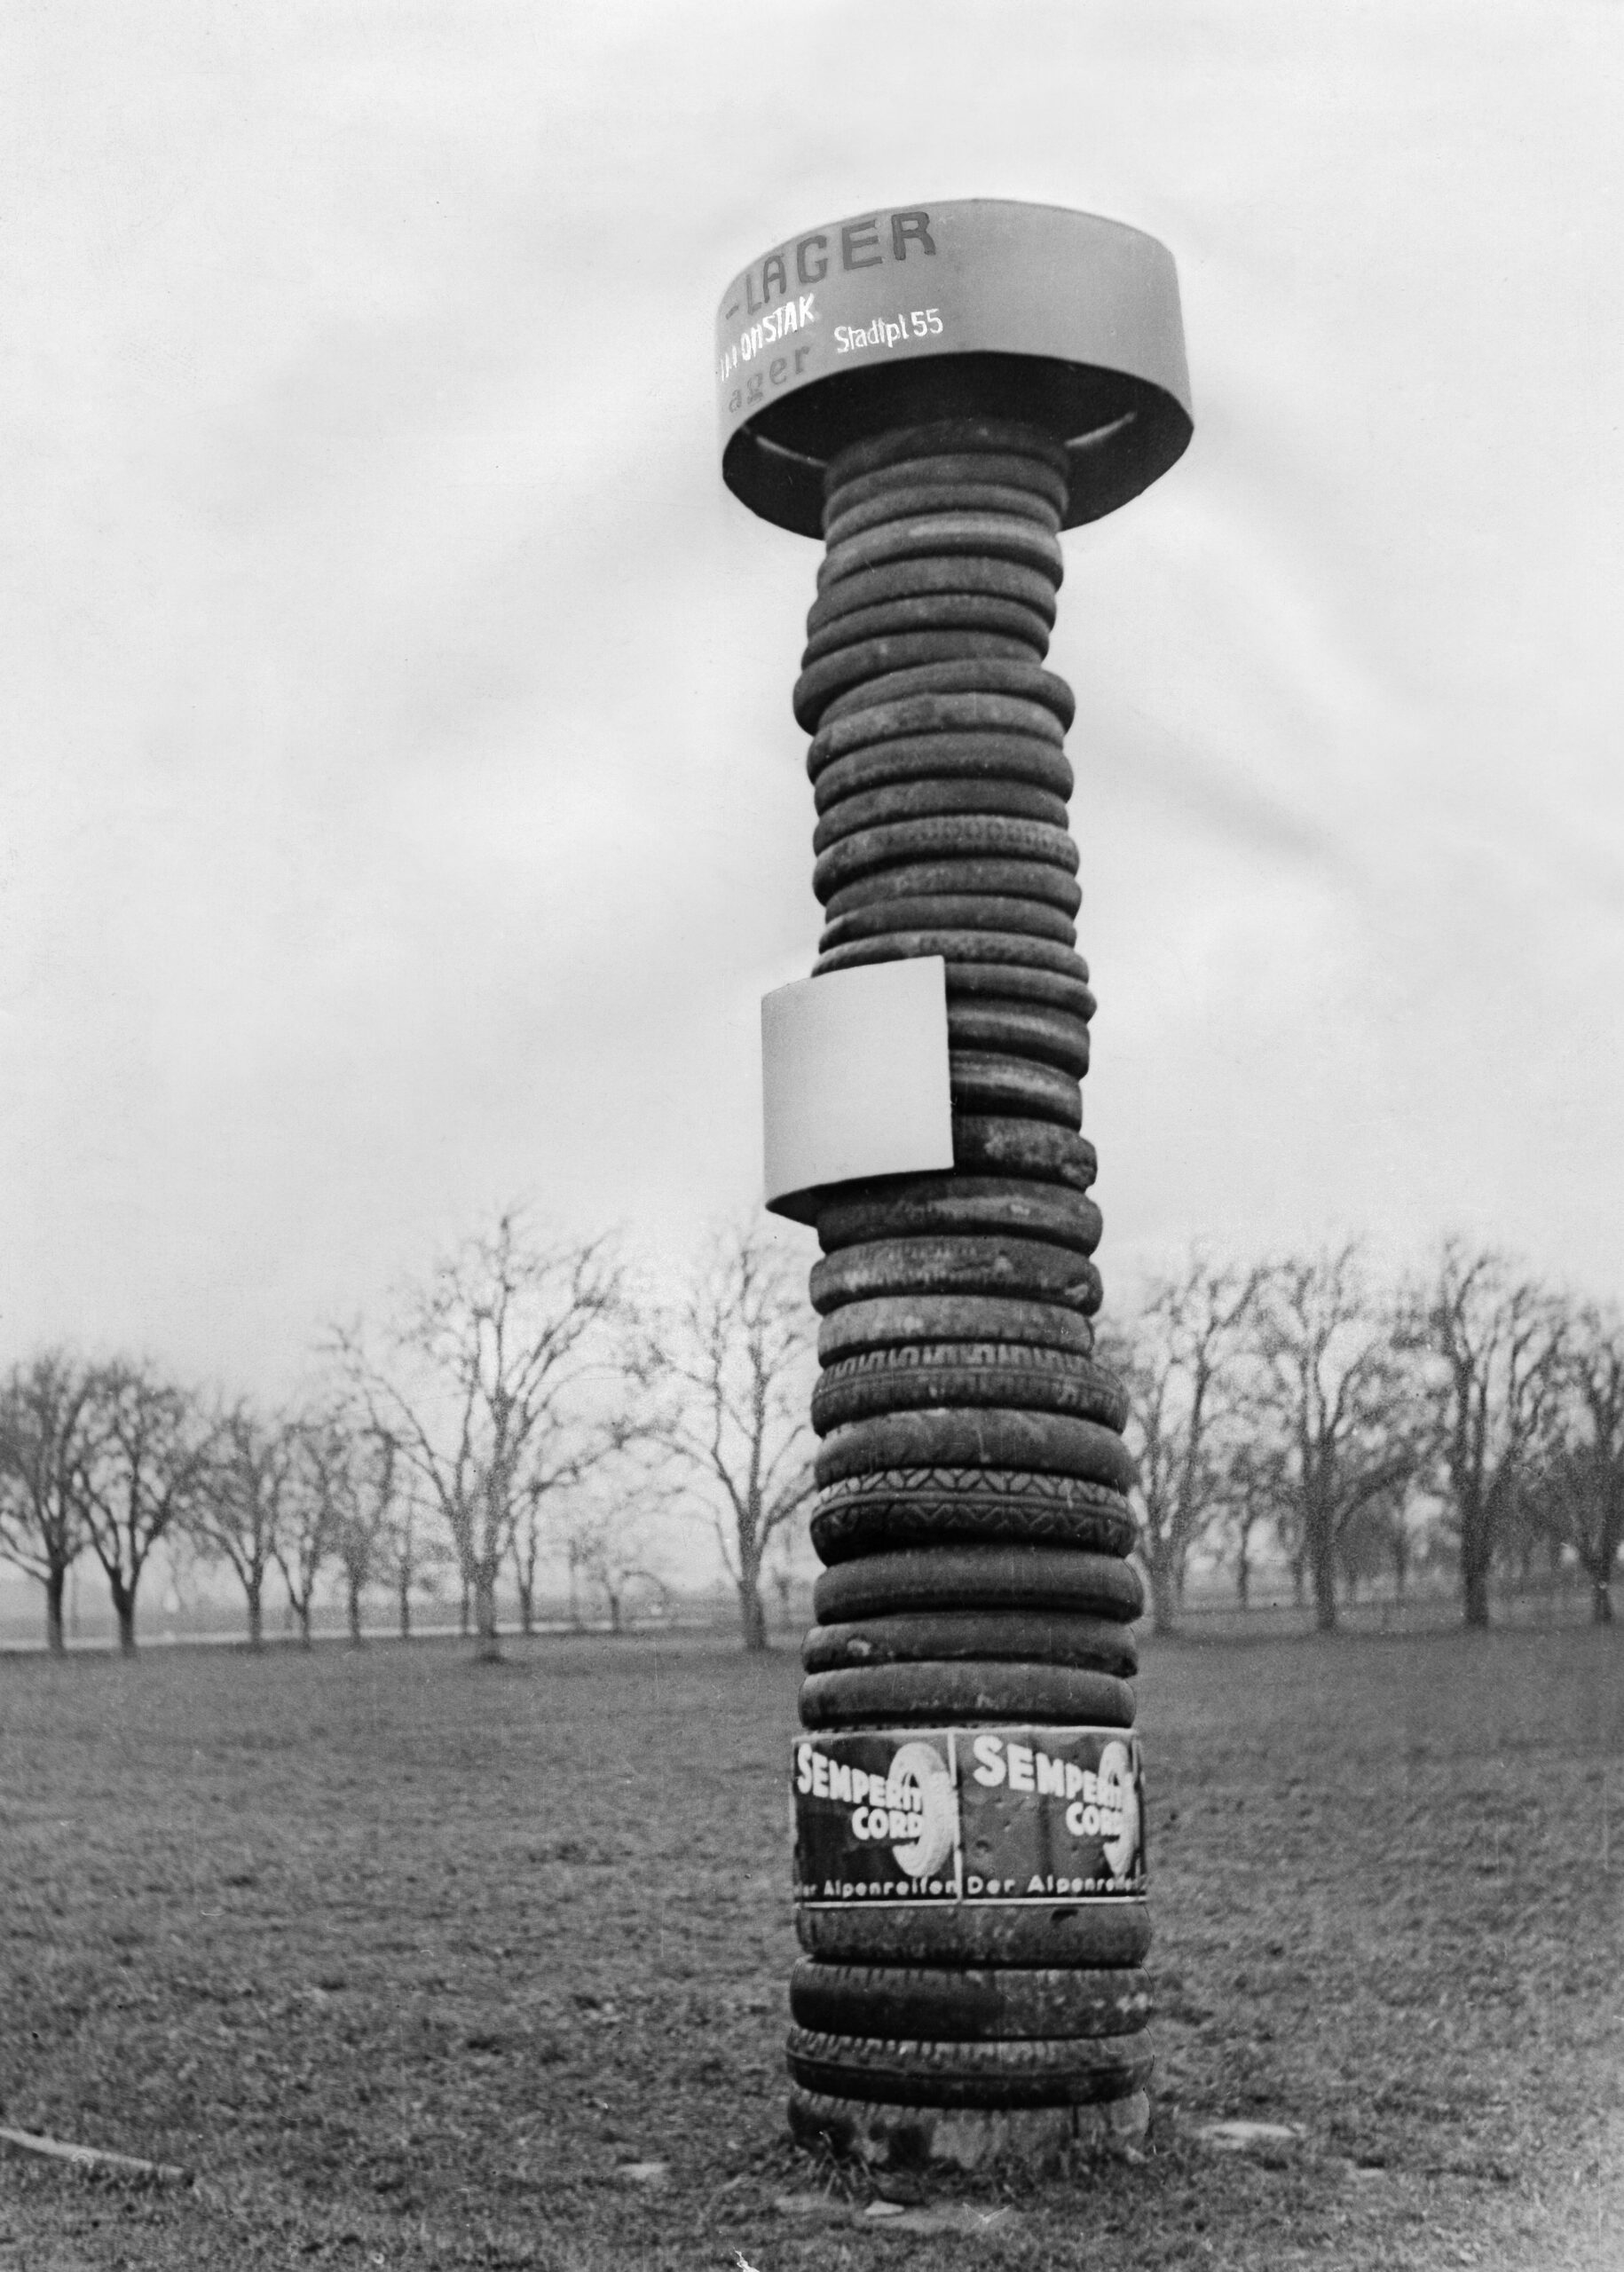 Reifenturm von Semperit in schwarz-weiß fotografiert. Dahinter befinden sich Bäume